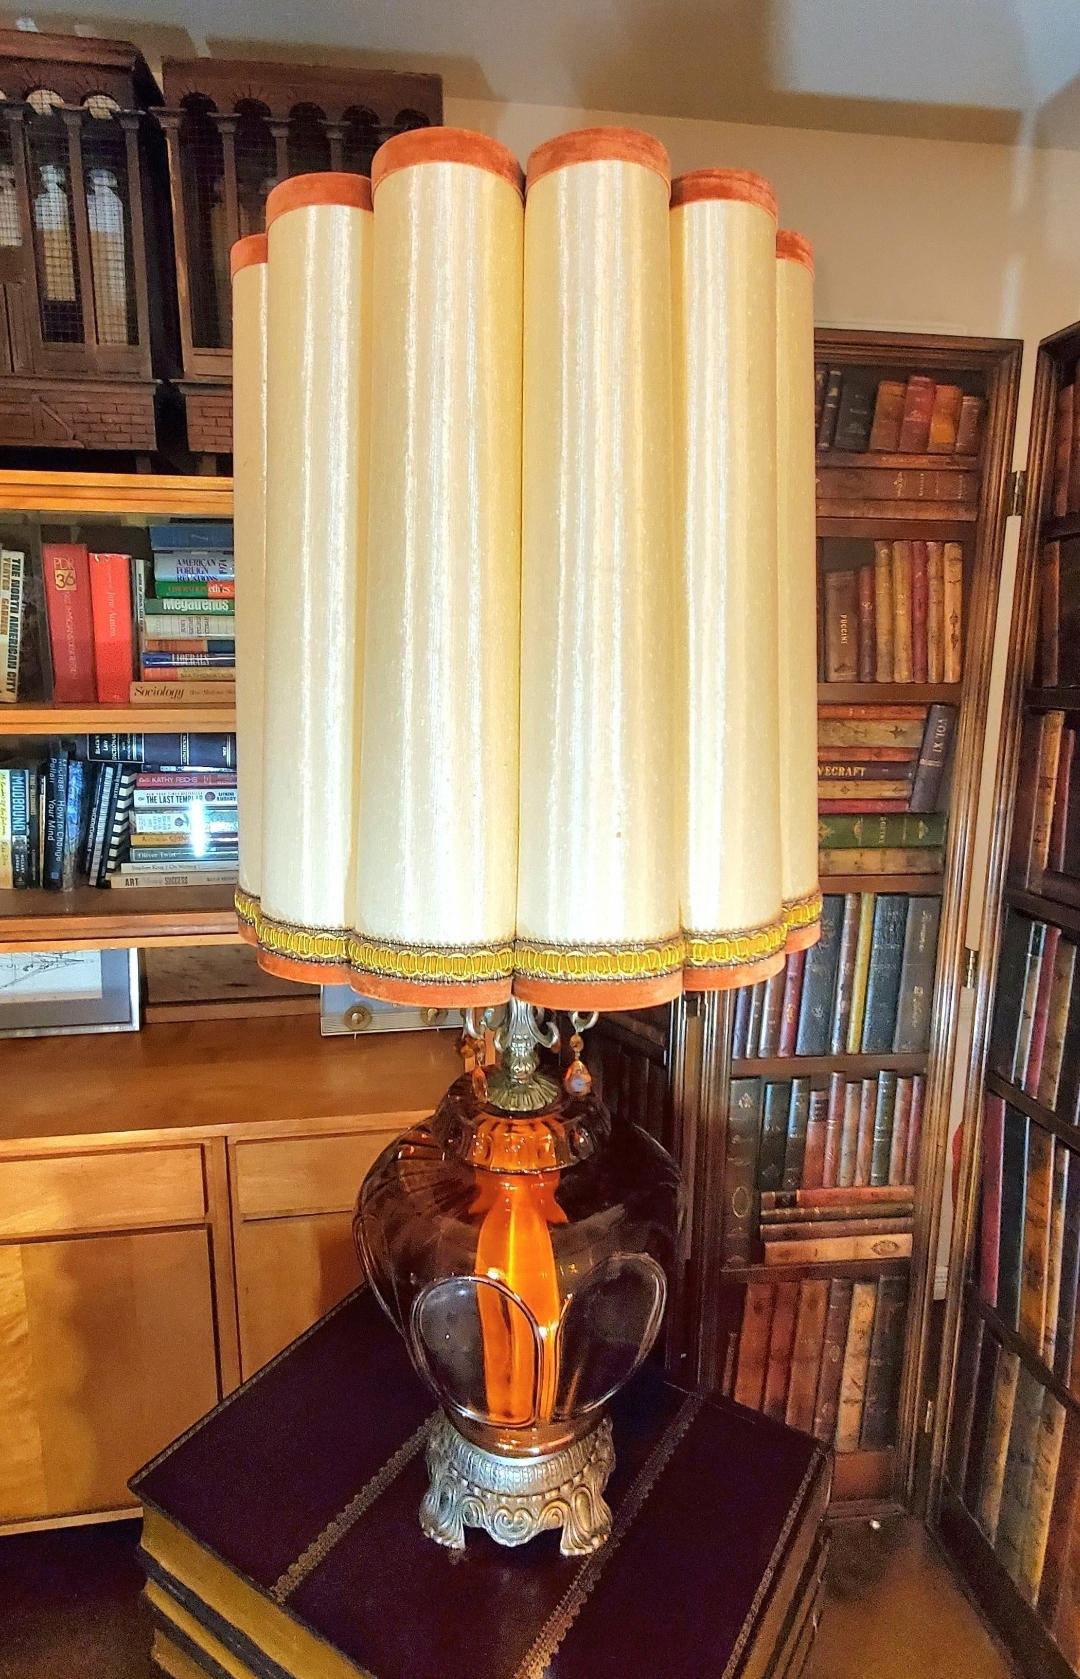 Monumental.
Lampe de table massive en verre ambré Hollywood Regency.
Lumière séparée à l'intérieur du verre ambré.
Magnifique abat-jour en forme de tambour cannelé.
Fonctionnalité parfaite.
Art déco.
Modernité du milieu du siècle.
35